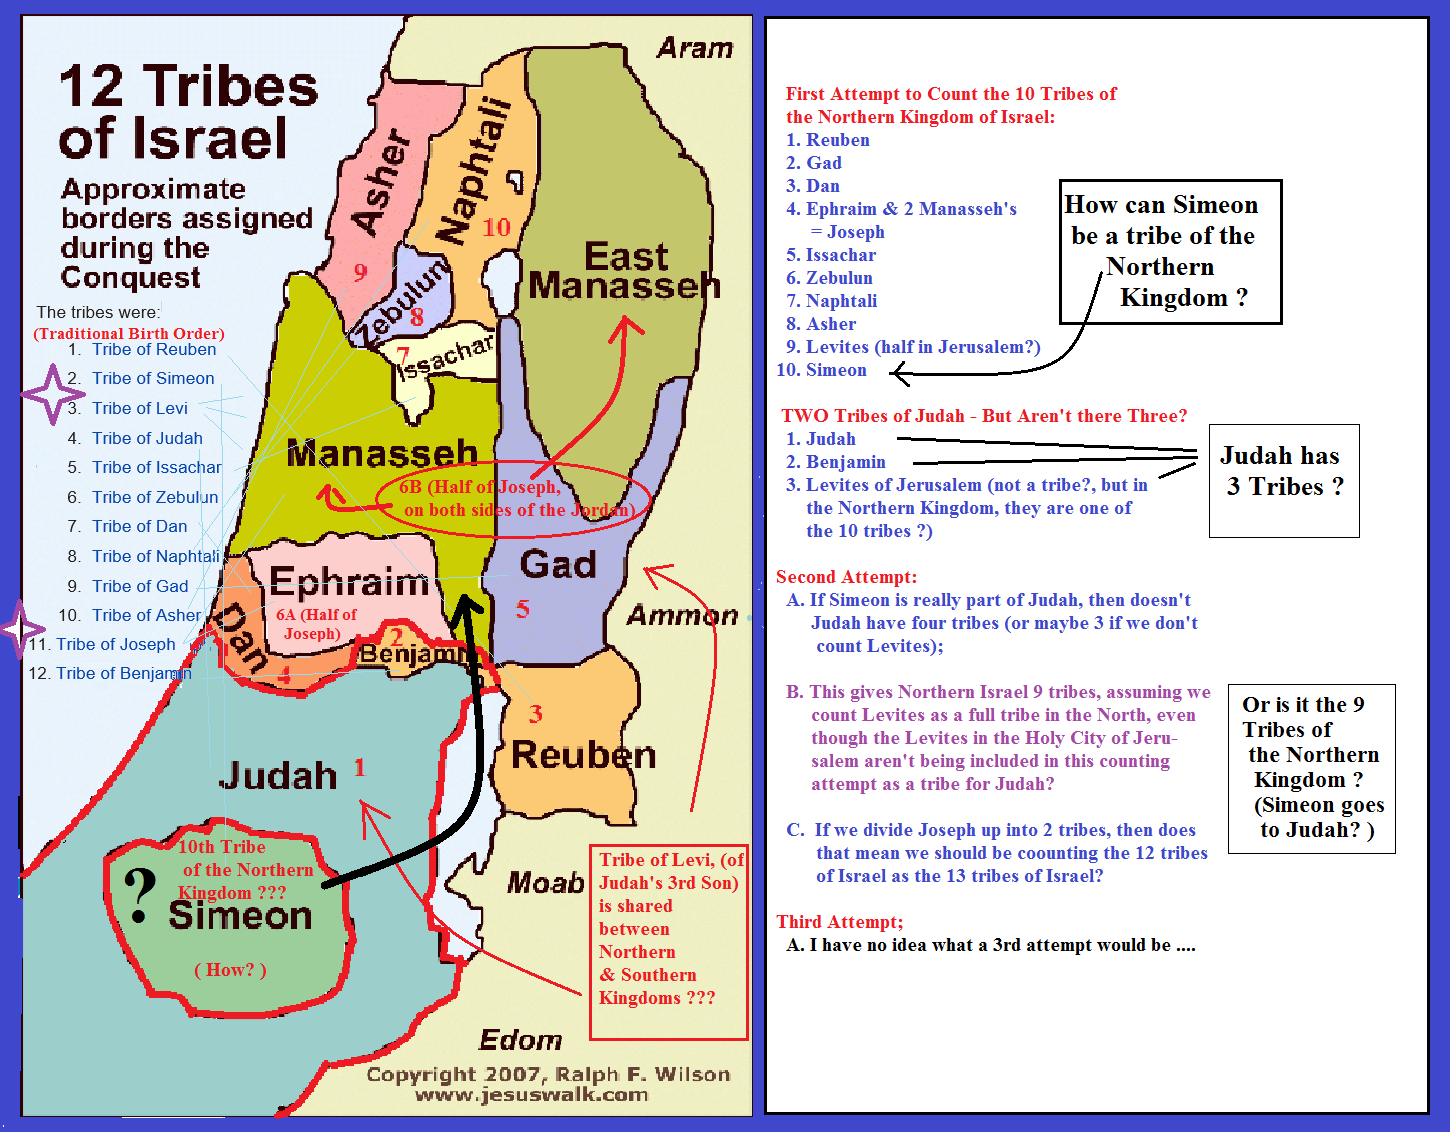 שֵׁבֶט יְהוּדָה, shevet yehudah) was one of the twelve tribes of israel. 